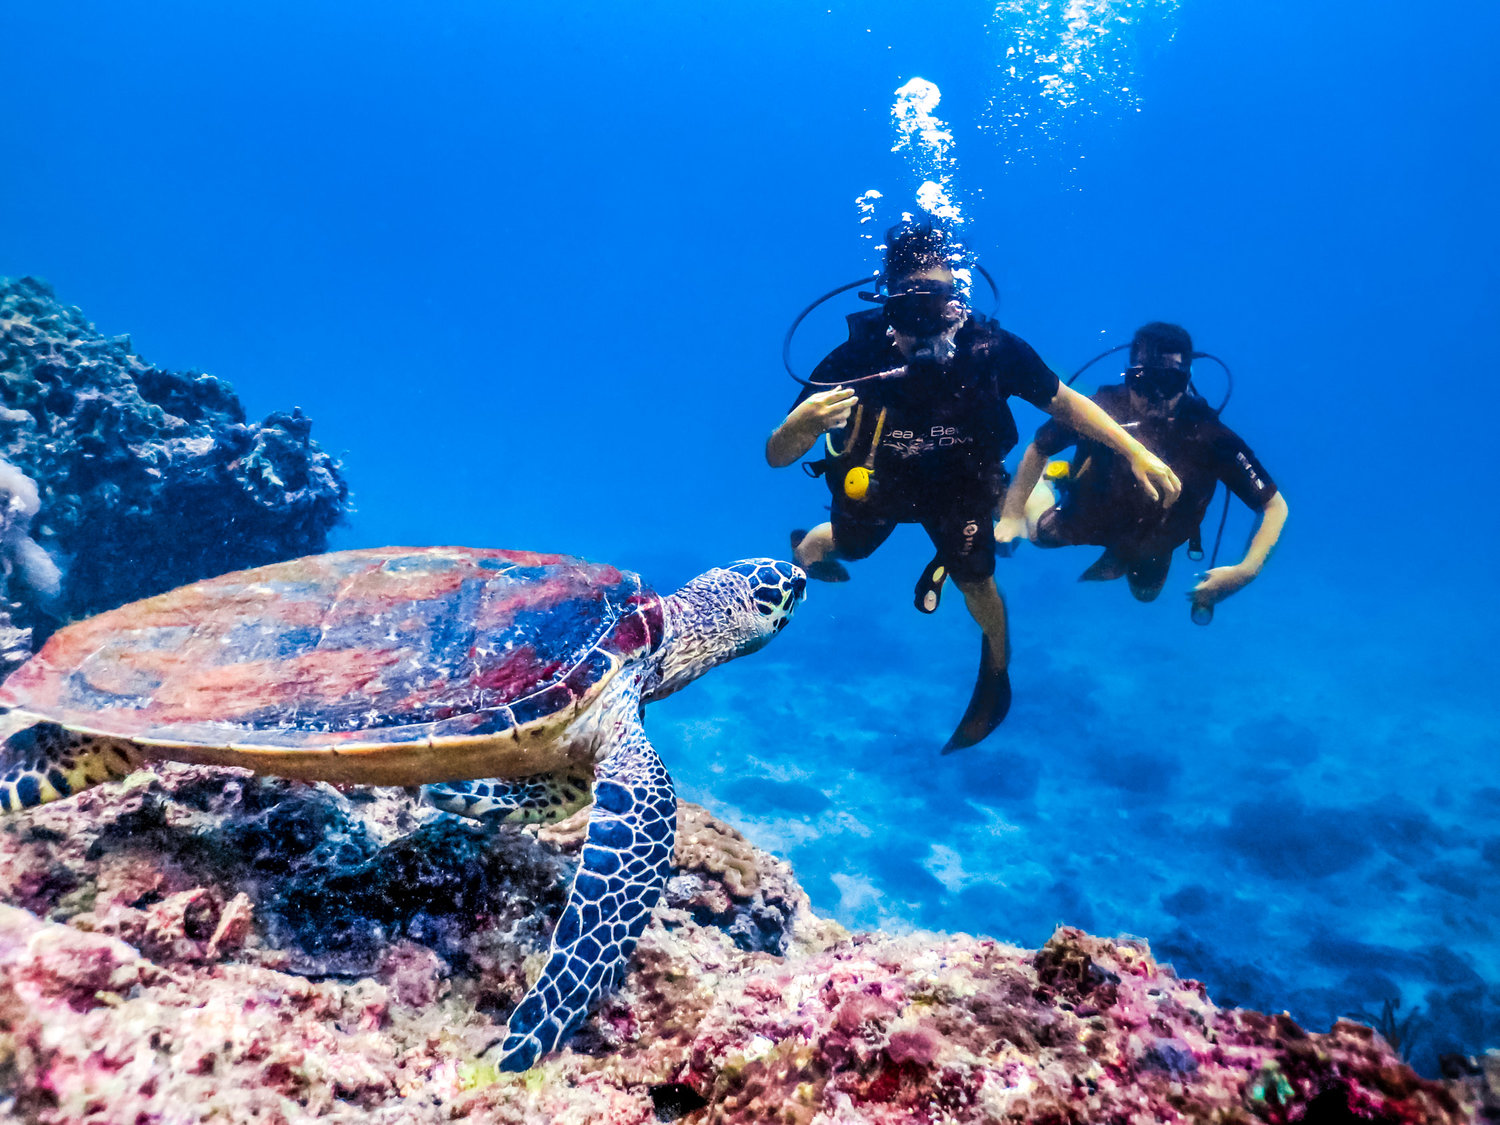 Tham gia lặn biển ở Koh Phi Phi  Đã du lịch đến Koh Phi Phi rồi thì nhất định không bỏ qua hoạt động lặn biển tại đây. Bạn sẽ có dịp mãn nhãn với hệ sinh thái biển tại đây với các rạn san hô đầy màu sắc và thực vật biển vô cùng phong phú, đa dạng,.   lan-bien-dao-phi-phi  Lặn ngắm san hô tại đảo Koh Phi Phi (Ảnh: Sưu tầm)   Bạn có thể tham gia lặn biển tại Koh Bida Nok & Nai, vịnh Maya hoặc King Cruiser,... Một lưu ý dành cho bạn là không nên tự lặn biển mà hãy mua tour lặn hoặc cần có sự hướng dẫn để đảm bảo an toàn.   Hãy thêm đảo Koh Phi Phi vào list những điểm nhất định phải đến khi du lịch Thái Lan. Khám phá thiên đường nghỉ dưỡng với những khung cảnh tuyệt đẹp, thưởng thức những món ăn ngon sẽ đem lại cho bạn một trải nghiệm hoàn toàn mới đó. 